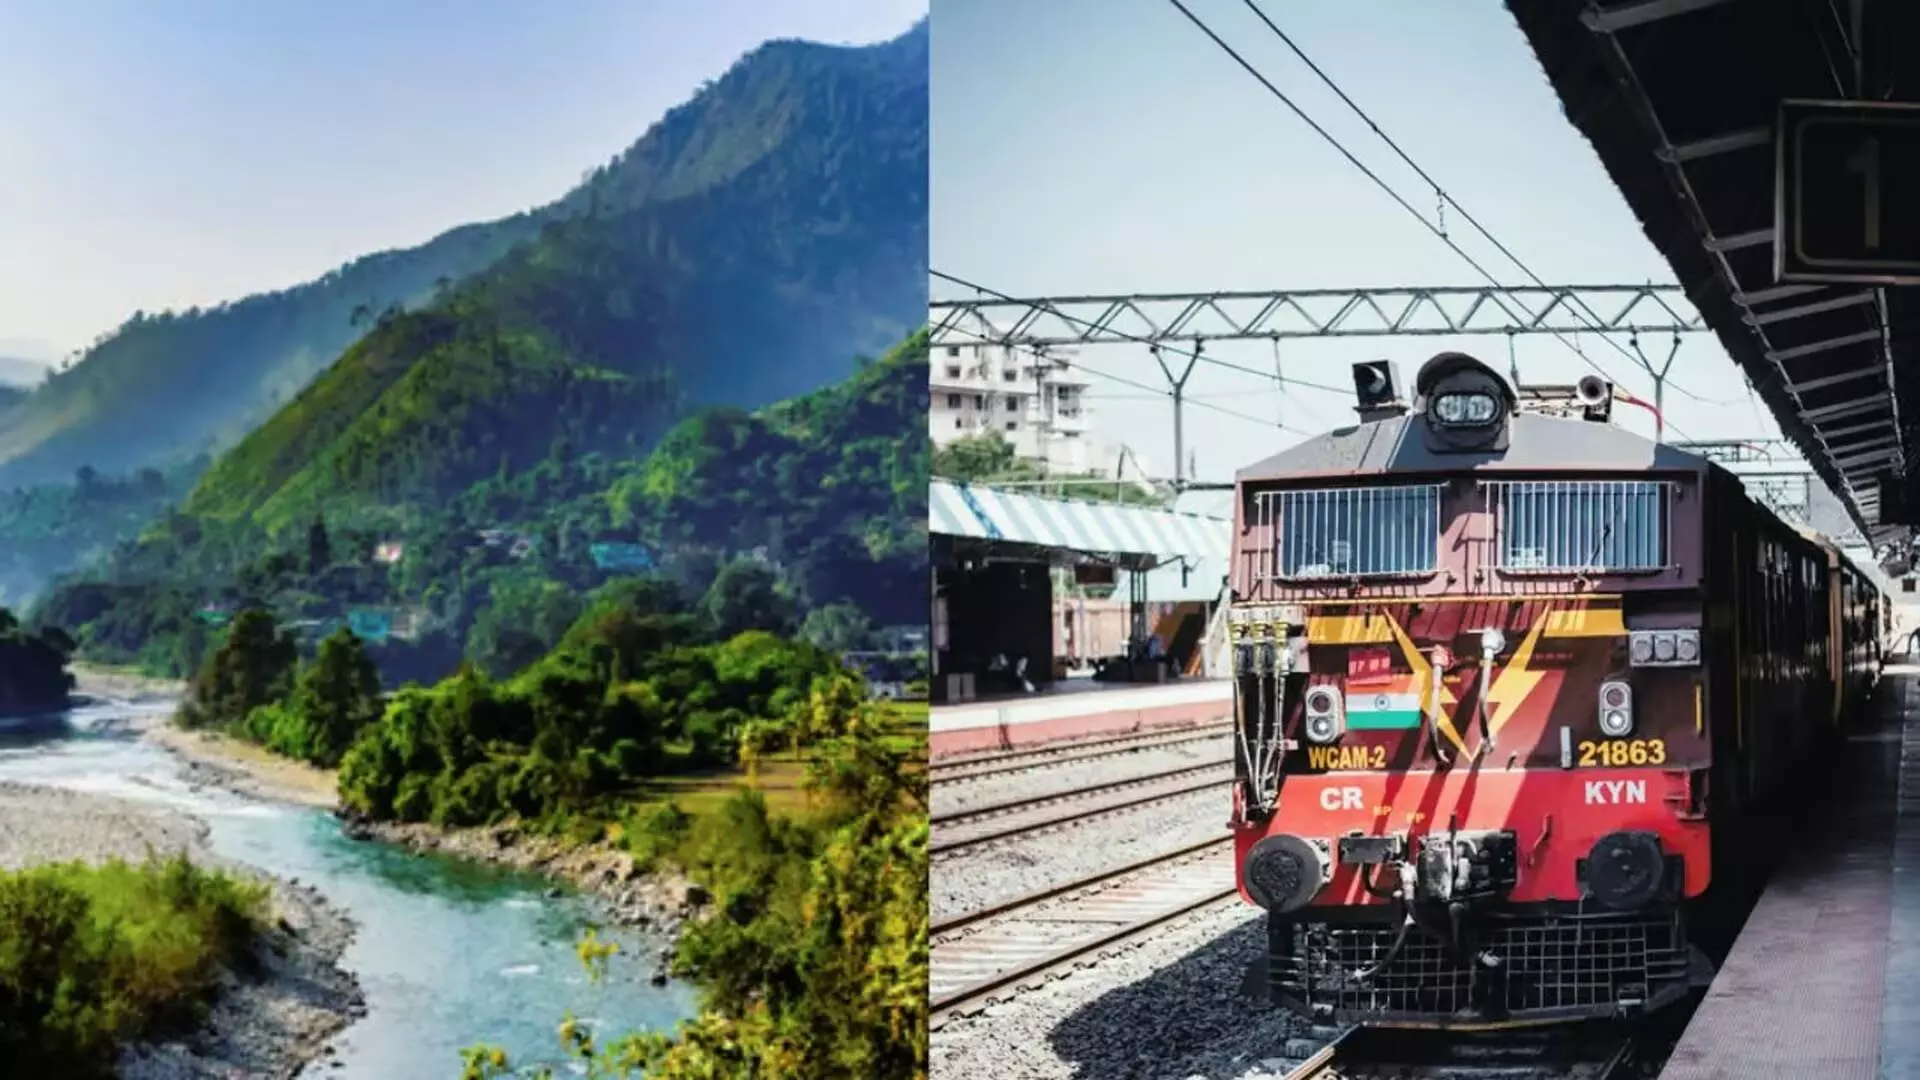 भारतीय रेलवे और उत्तराखंड पर्यटन ने मानसखंड एक्सप्रेस शुरू की